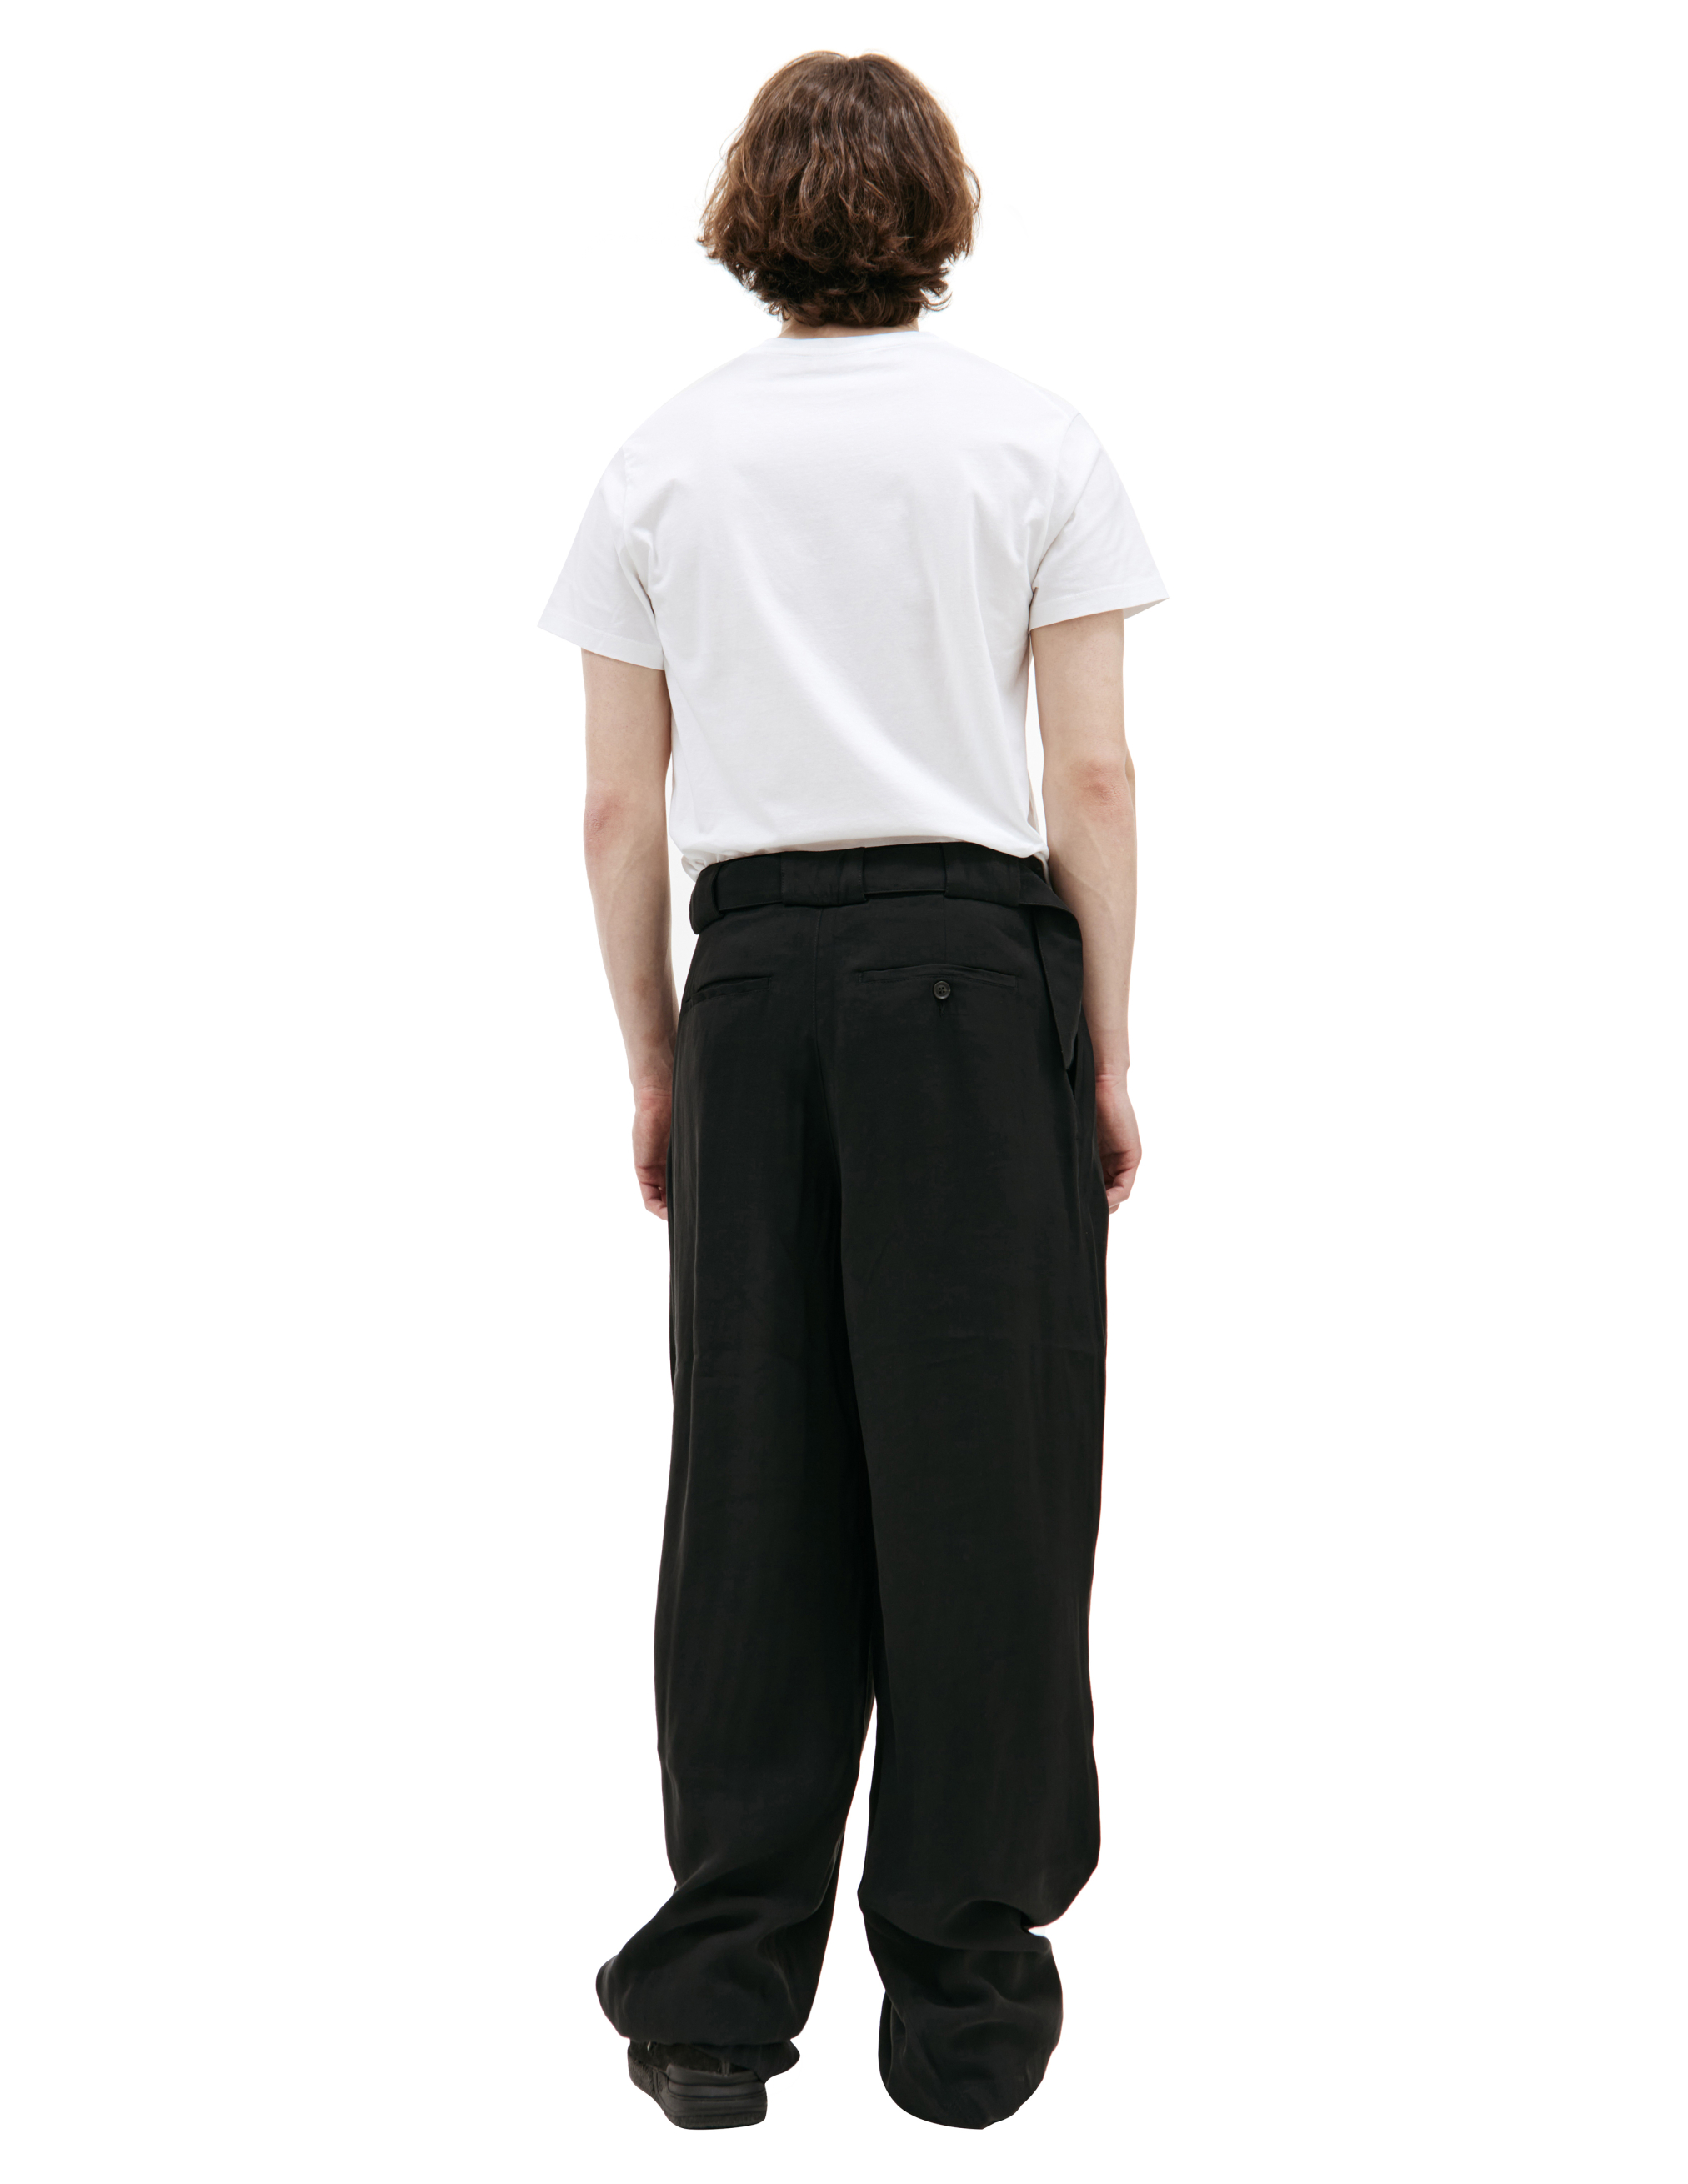 Широкие брюки с поясом LOUIS GABRIEL NOUCHI 0734/T600/001, размер M;L 0734/T600/001 - фото 3